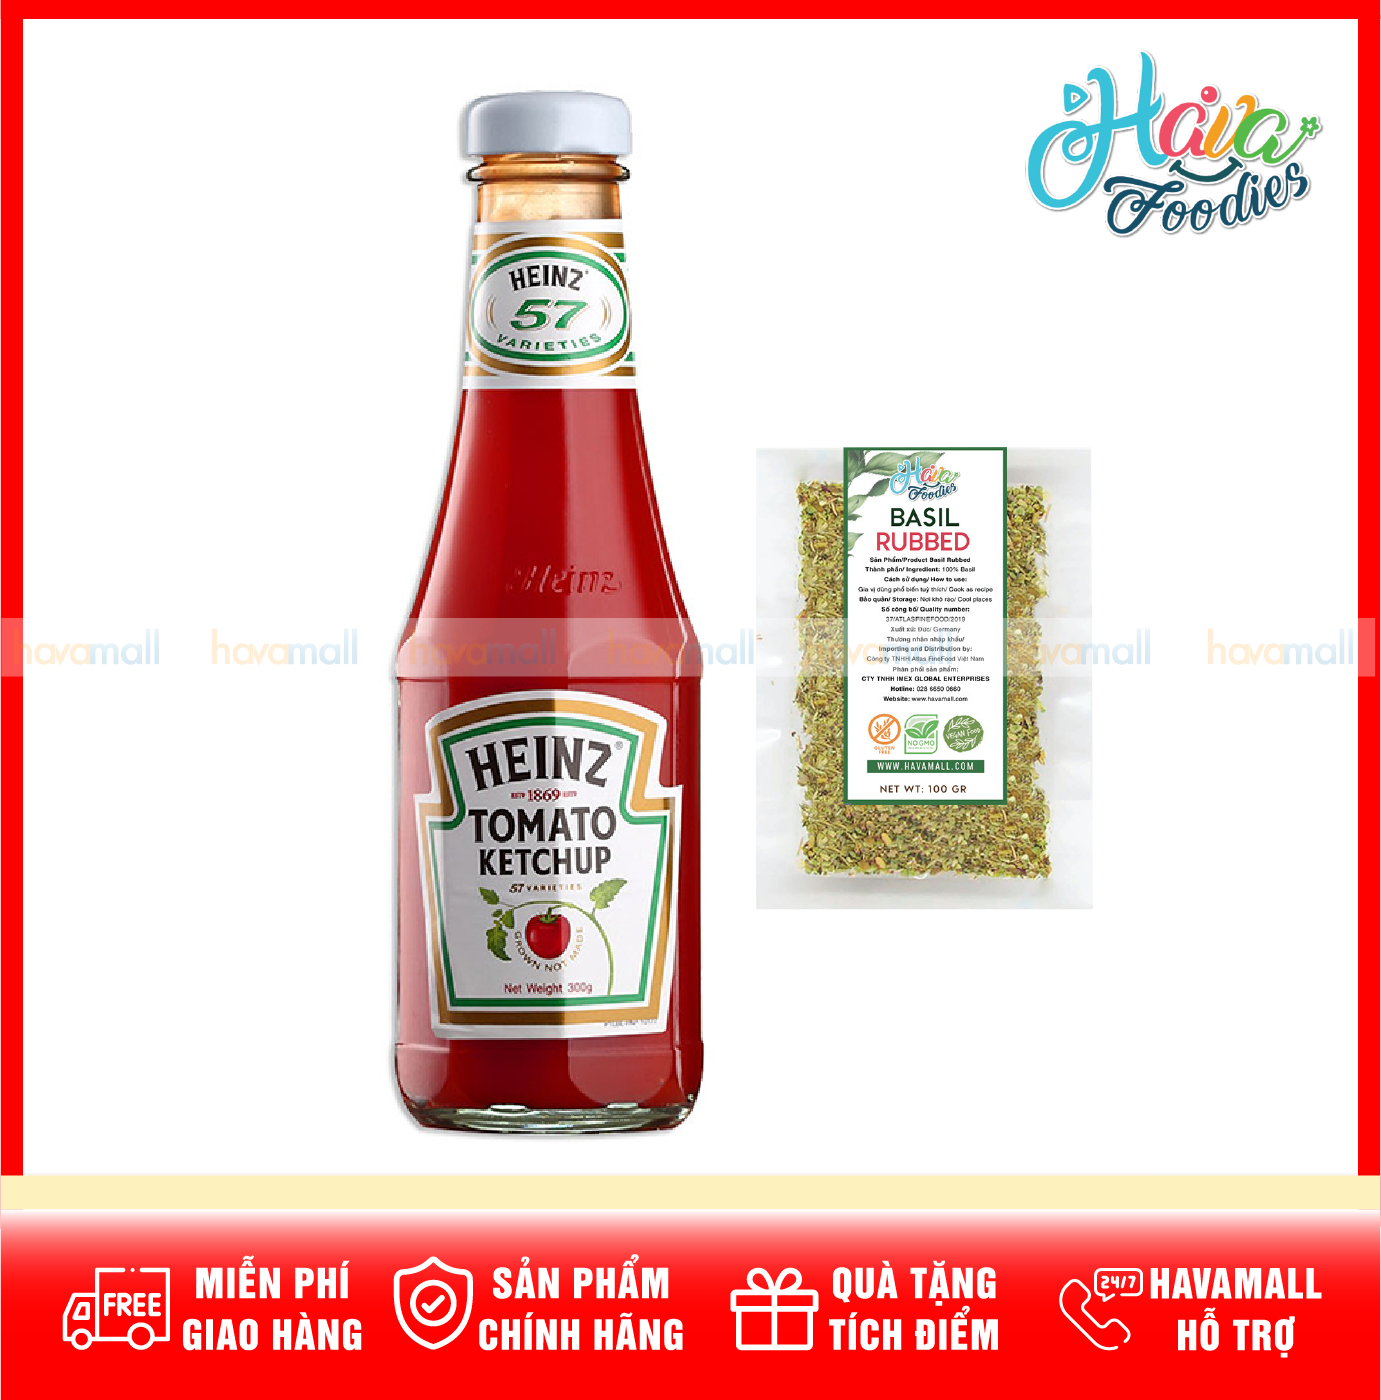 TẶNG LÁ BASIL - HÀNG CÔNG TY NHẬP KHẨU Tương Cà Heinz 300G Tomato Ketchup thumbnail